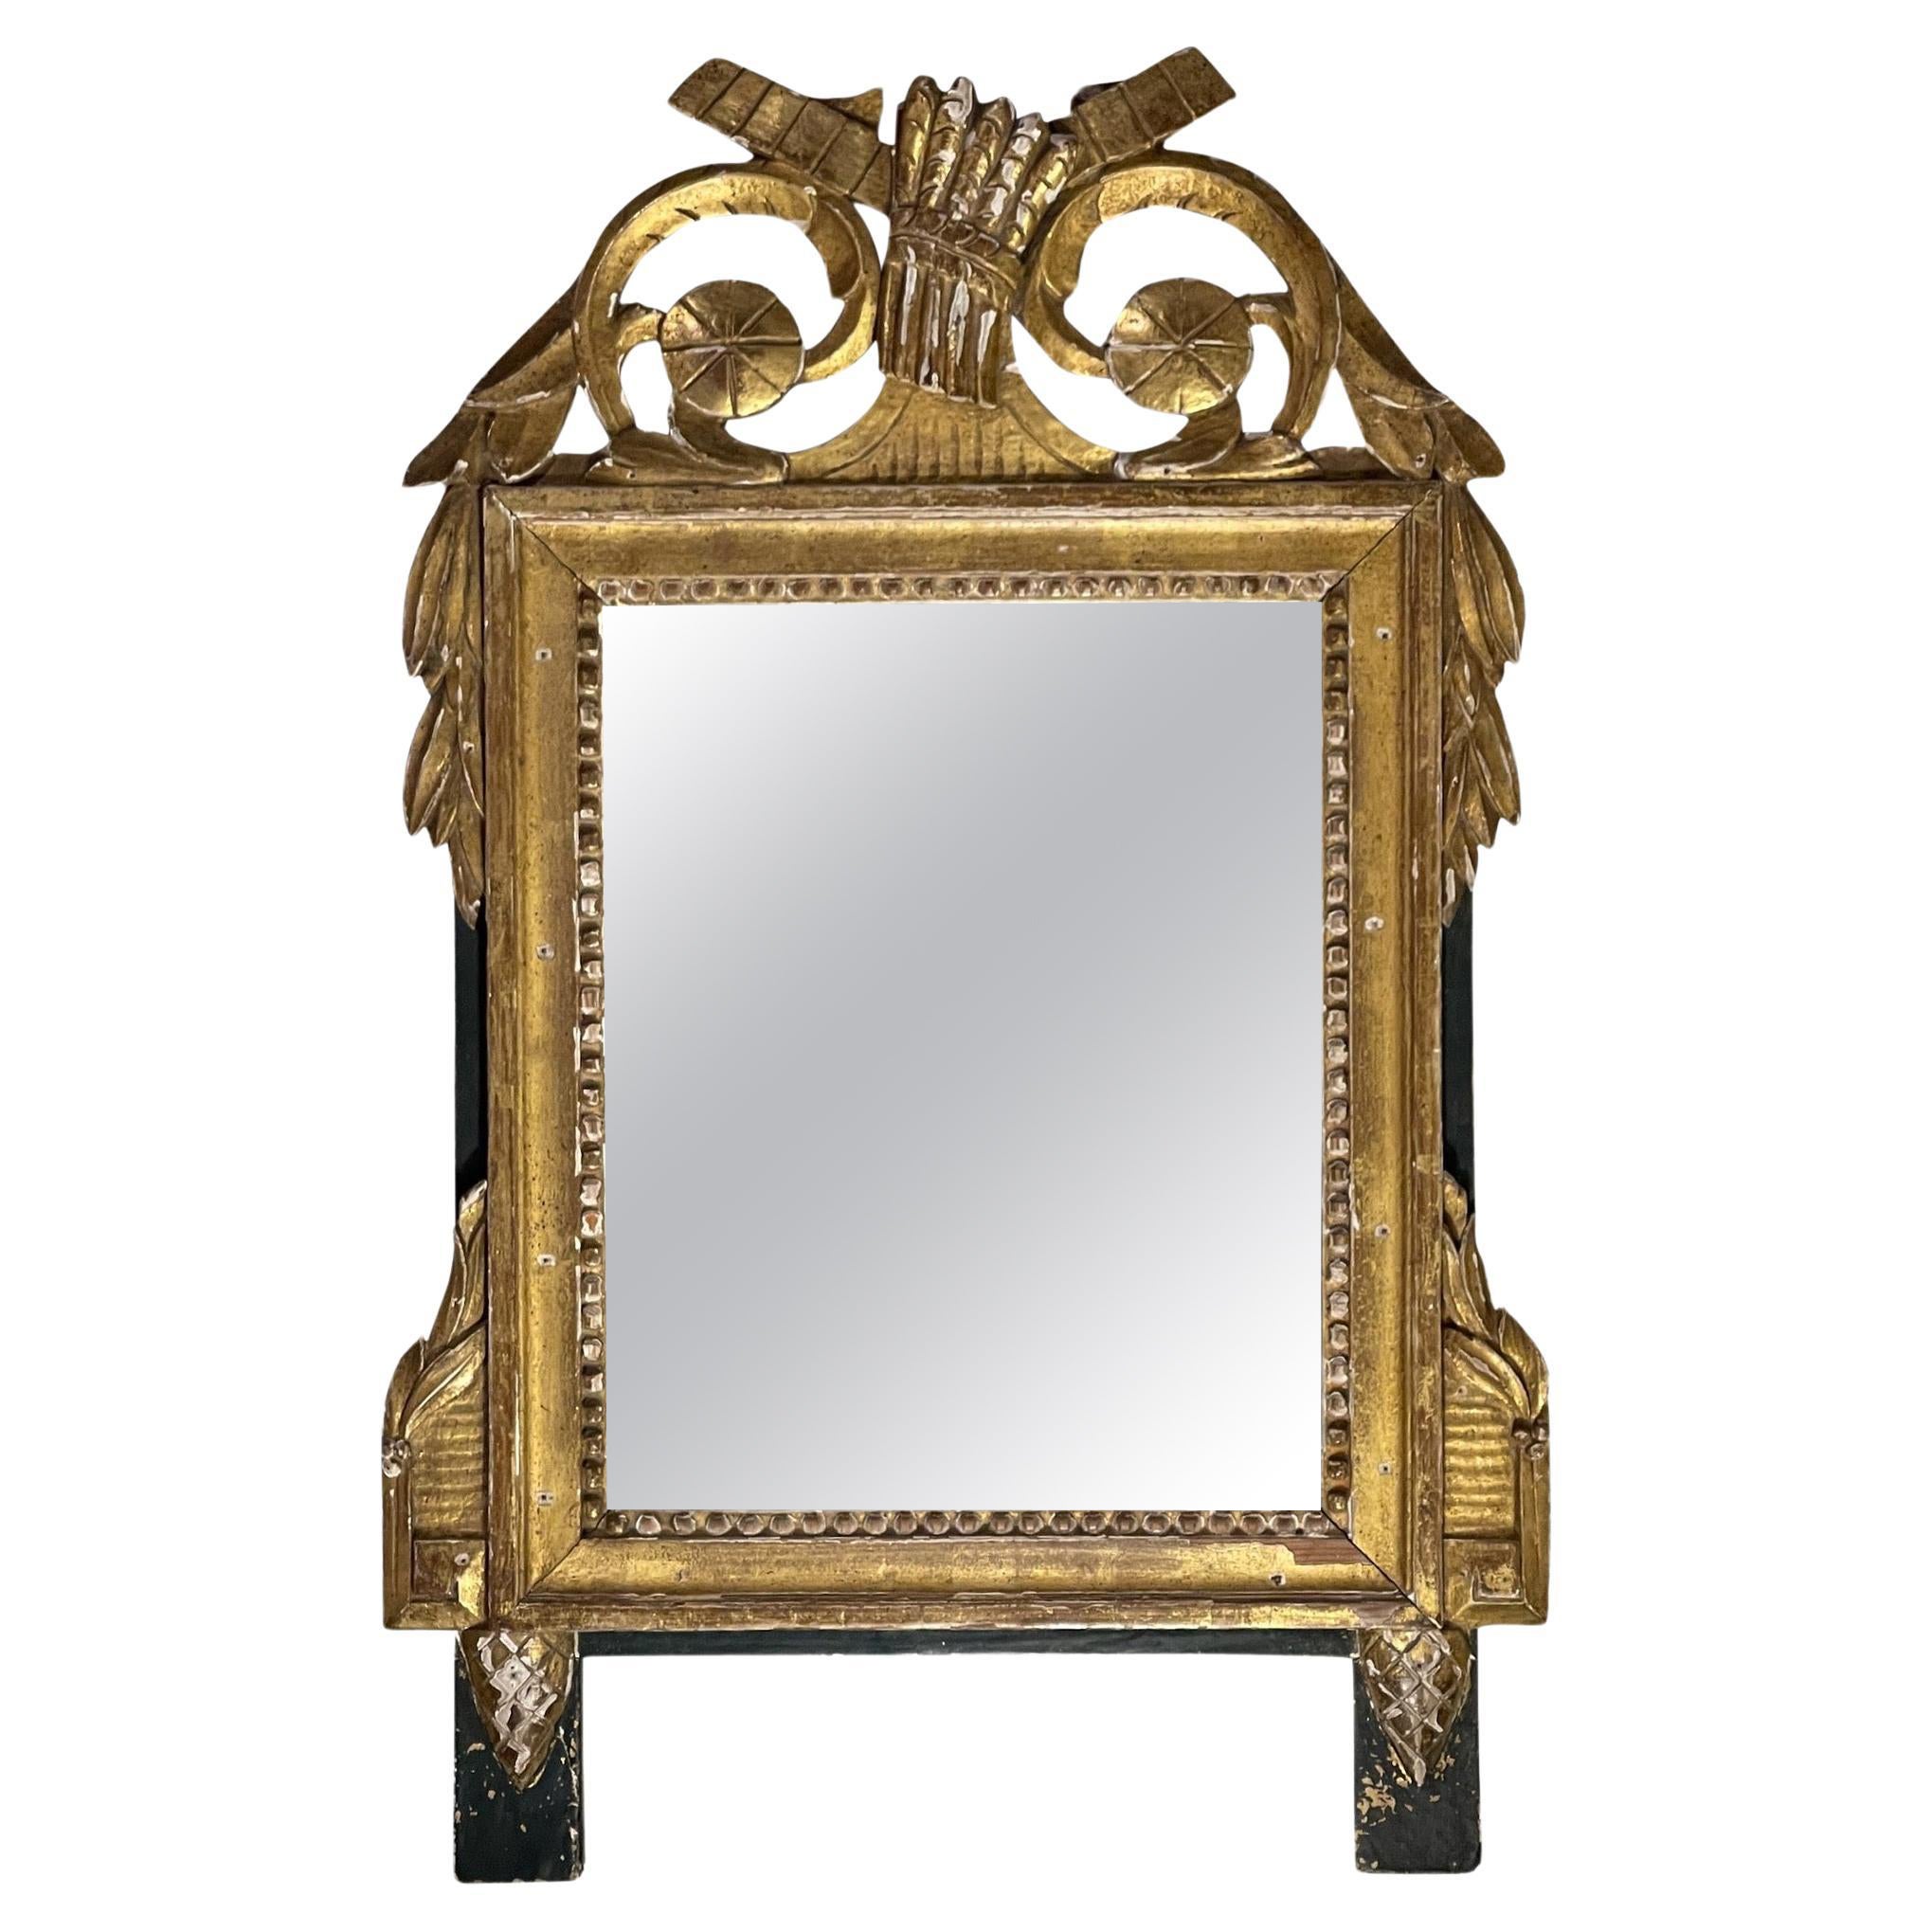 Giltwood-Spiegel aus dem frühen 19. Jahrhundert